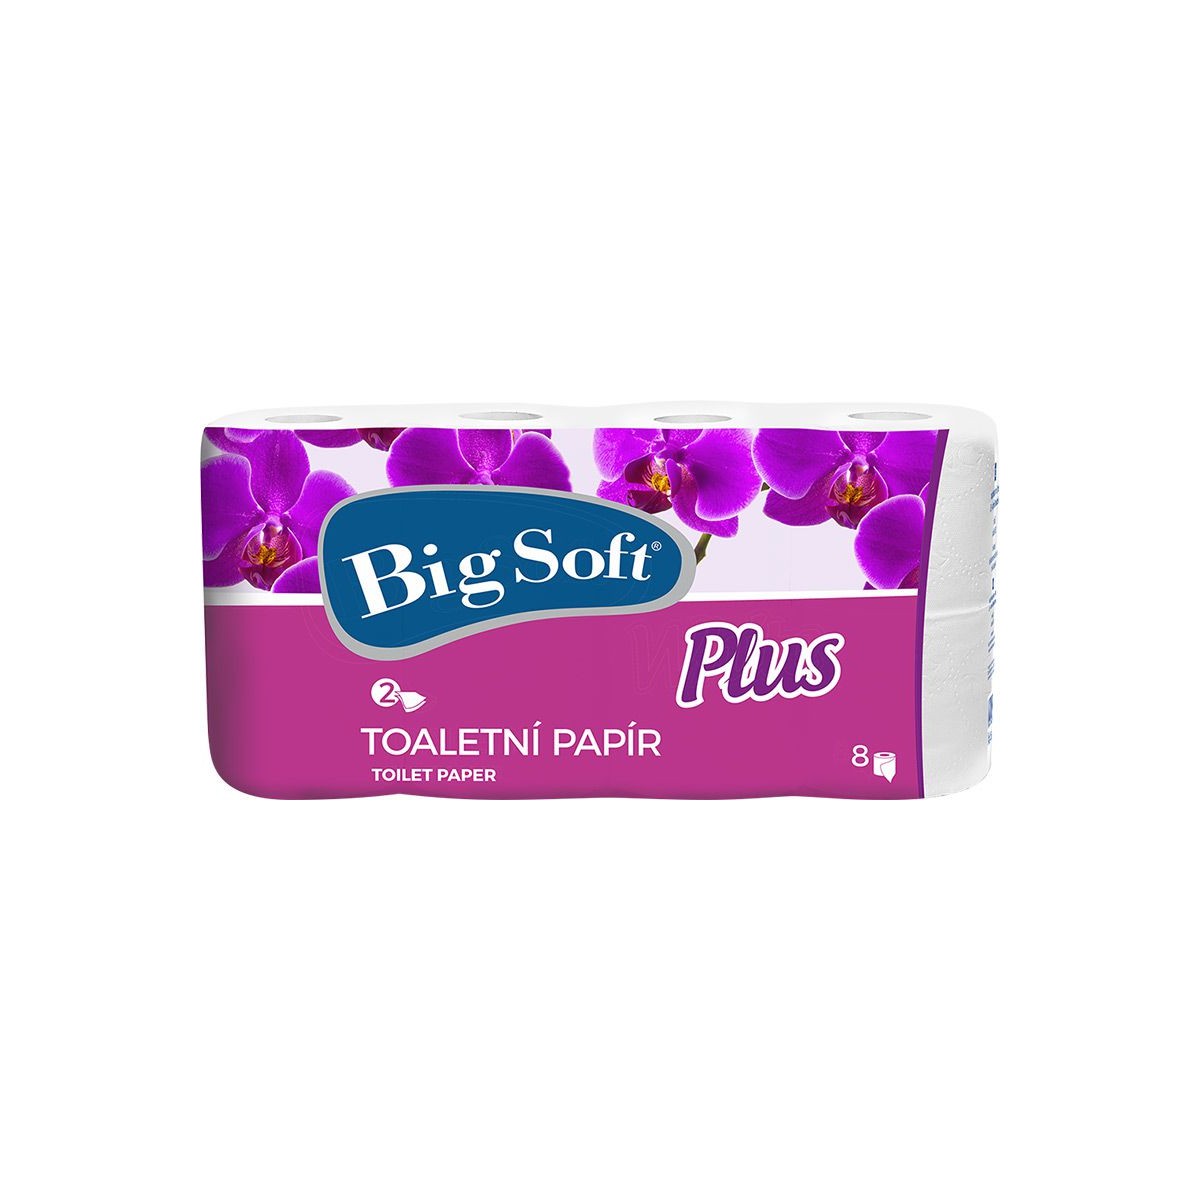 Toaletní papír Big Soft Plus 2vr. 8ks